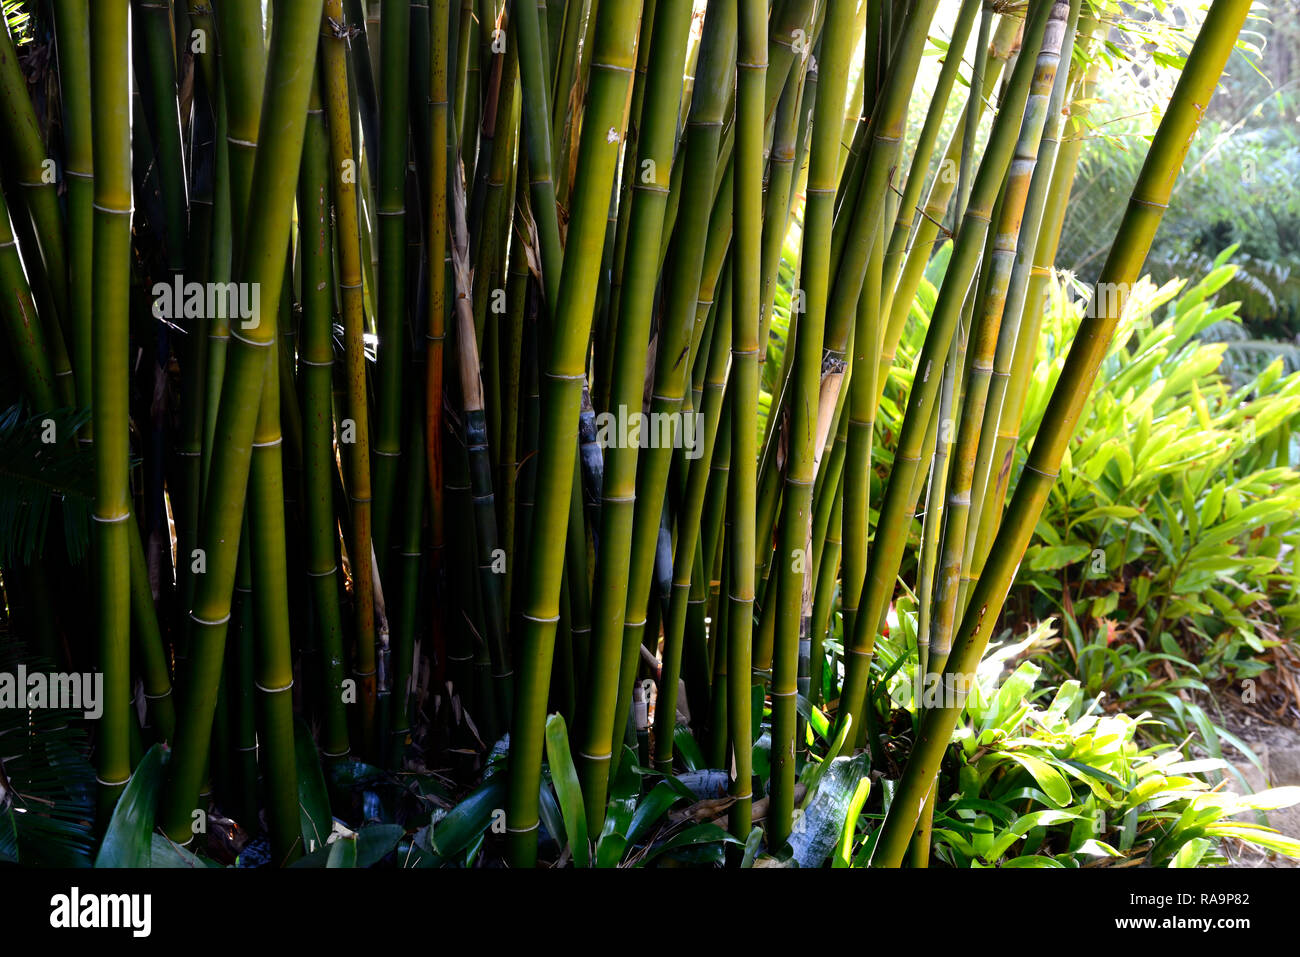 Bambusa textilis,Weaver's Bamboo,clump,clumping,cane,canes,culm,culms,green,bamboos,tropical,garden,gardens,RM Floral Stock Photo